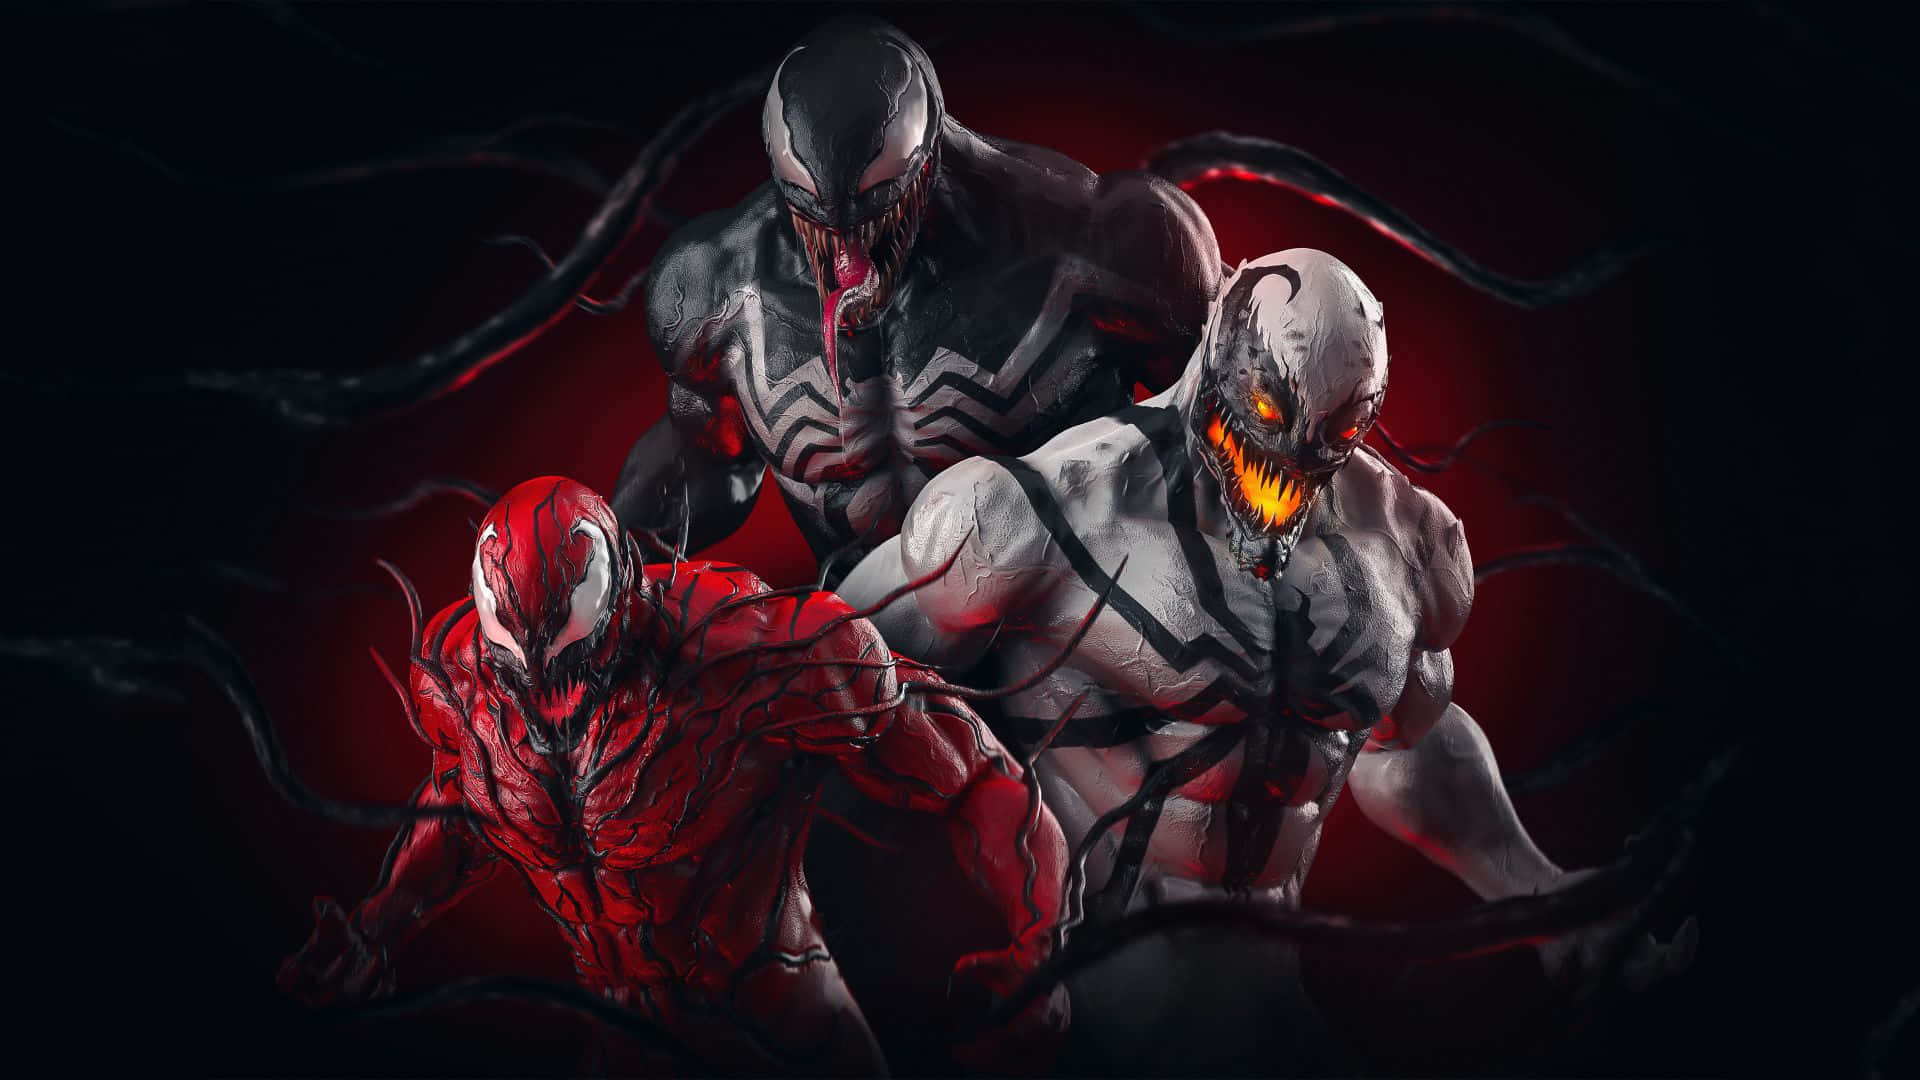 Episk Slag - Venom møder Carnage i et intens slag! Wallpaper